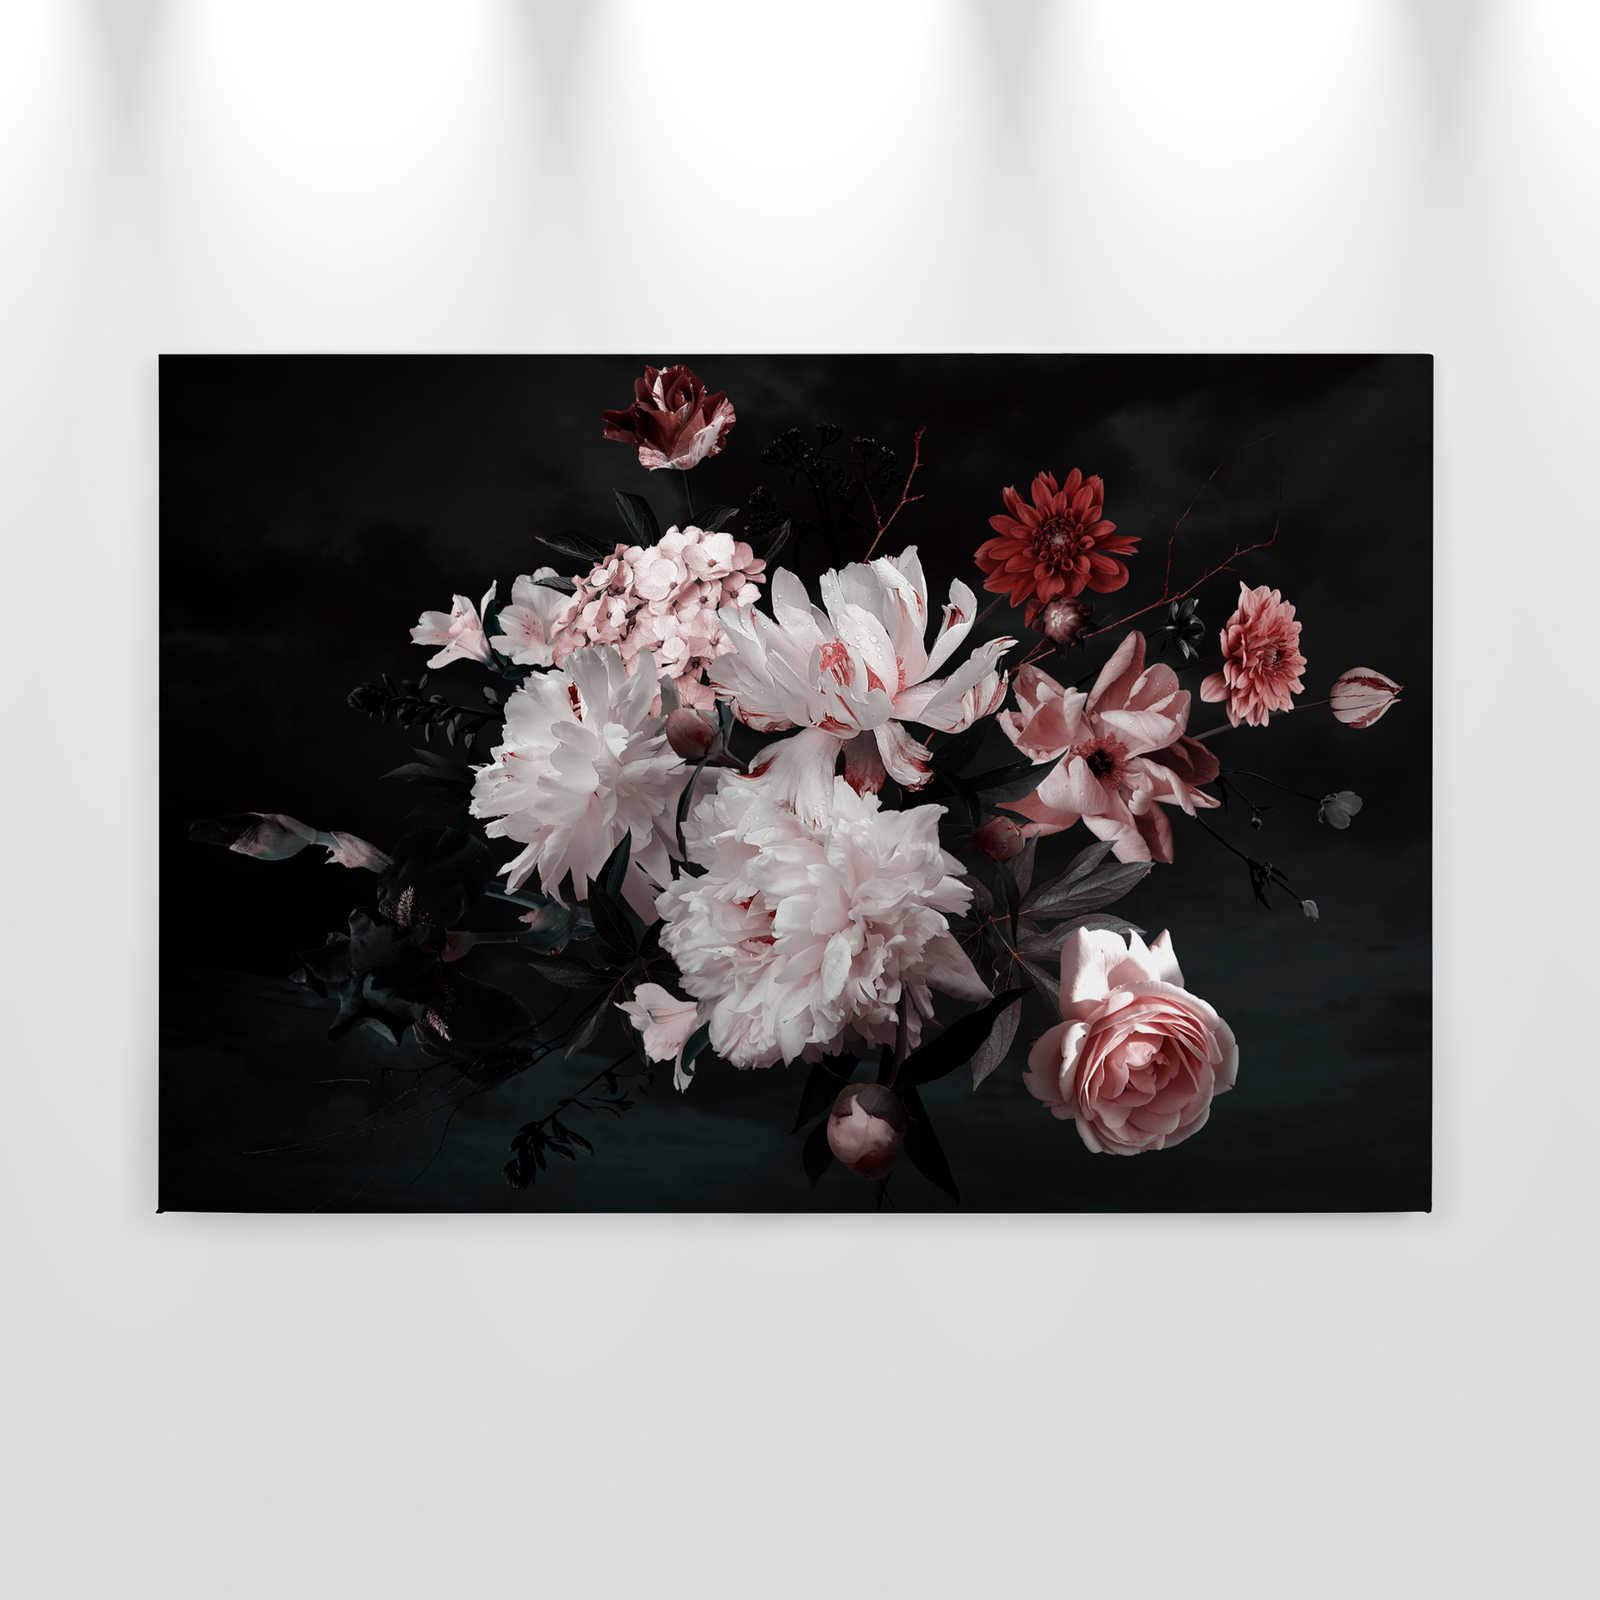             Bouquet de fleurs toile - 0,90 m x 0,60 m
        